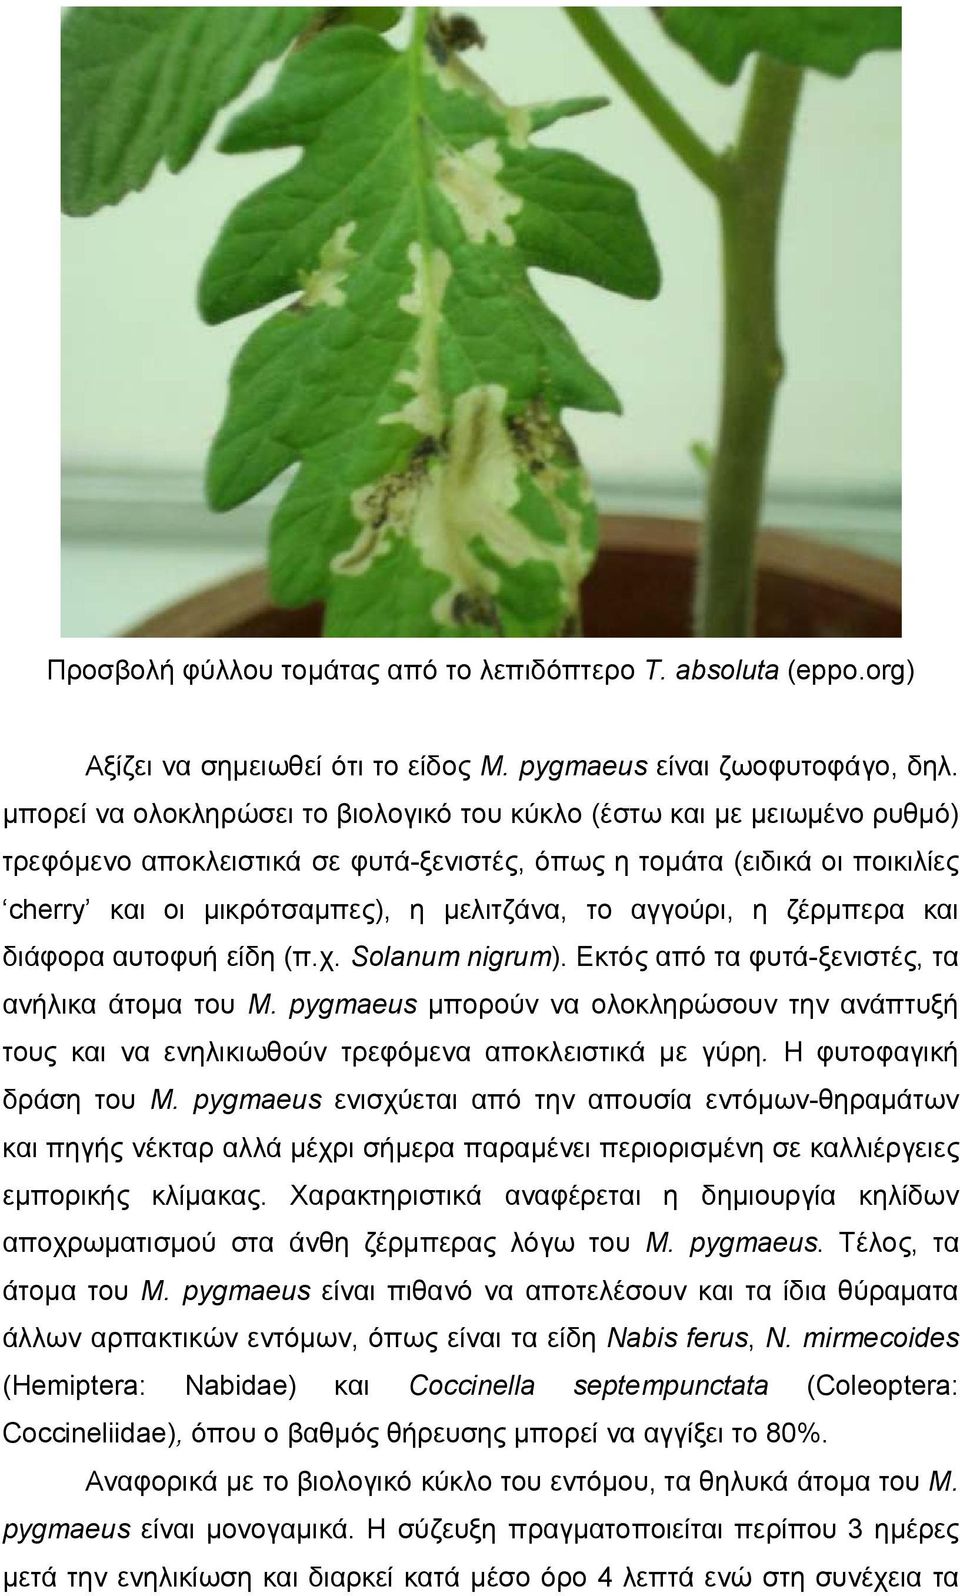 αγγούρι, η ζέρμπερα και διάφορα αυτοφυή είδη (π.χ. Solanum nigrum). Εκτός από τα φυτά-ξενιστές, τα ανήλικα άτομα του M.